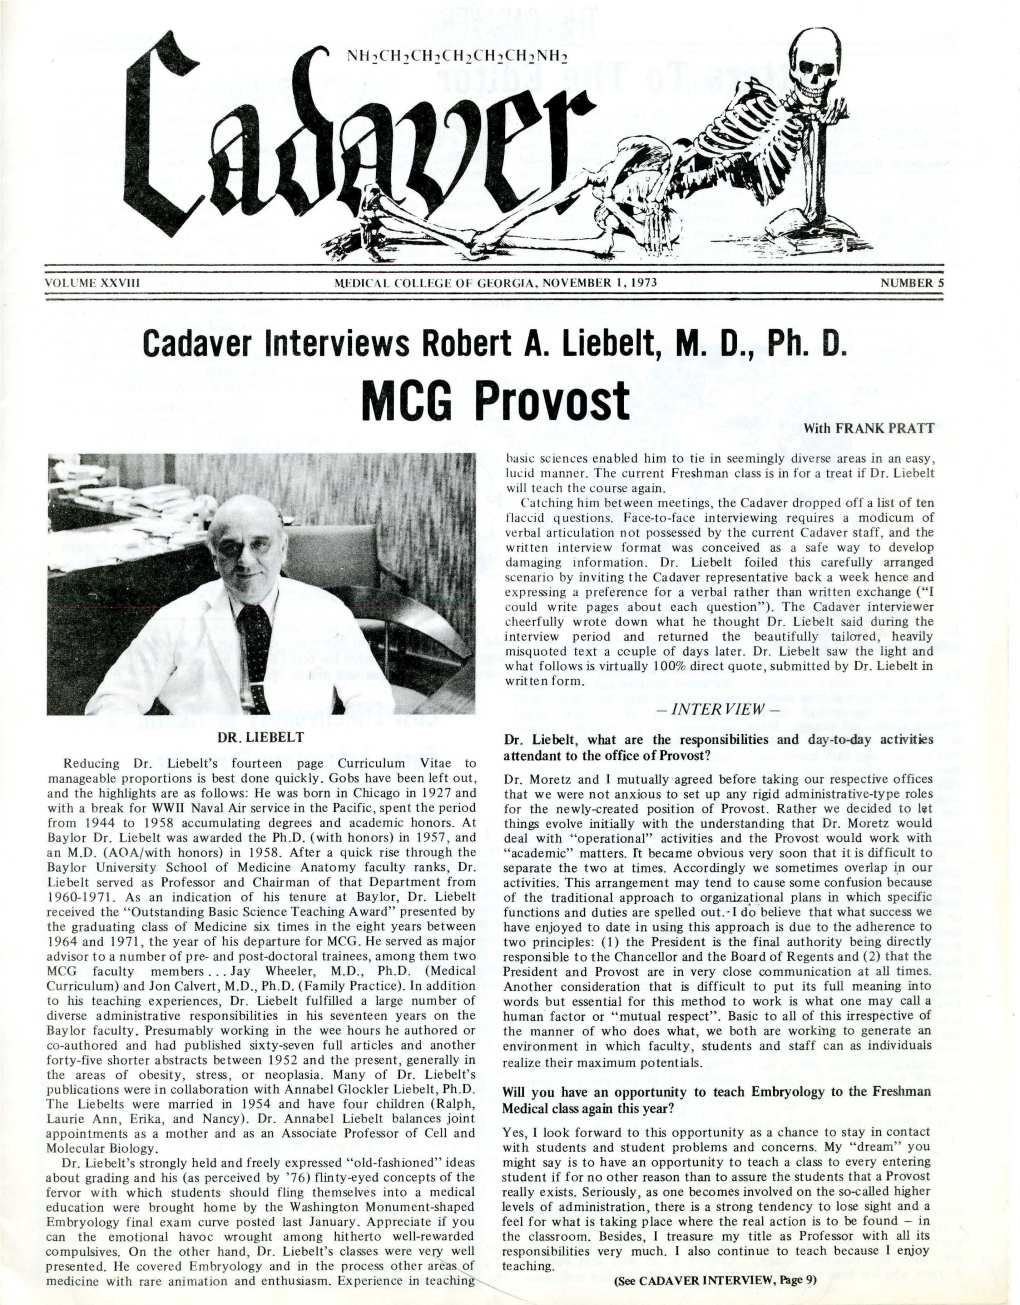 Cadaver Interviews Robert A. Liebelt, MD, Ph. D